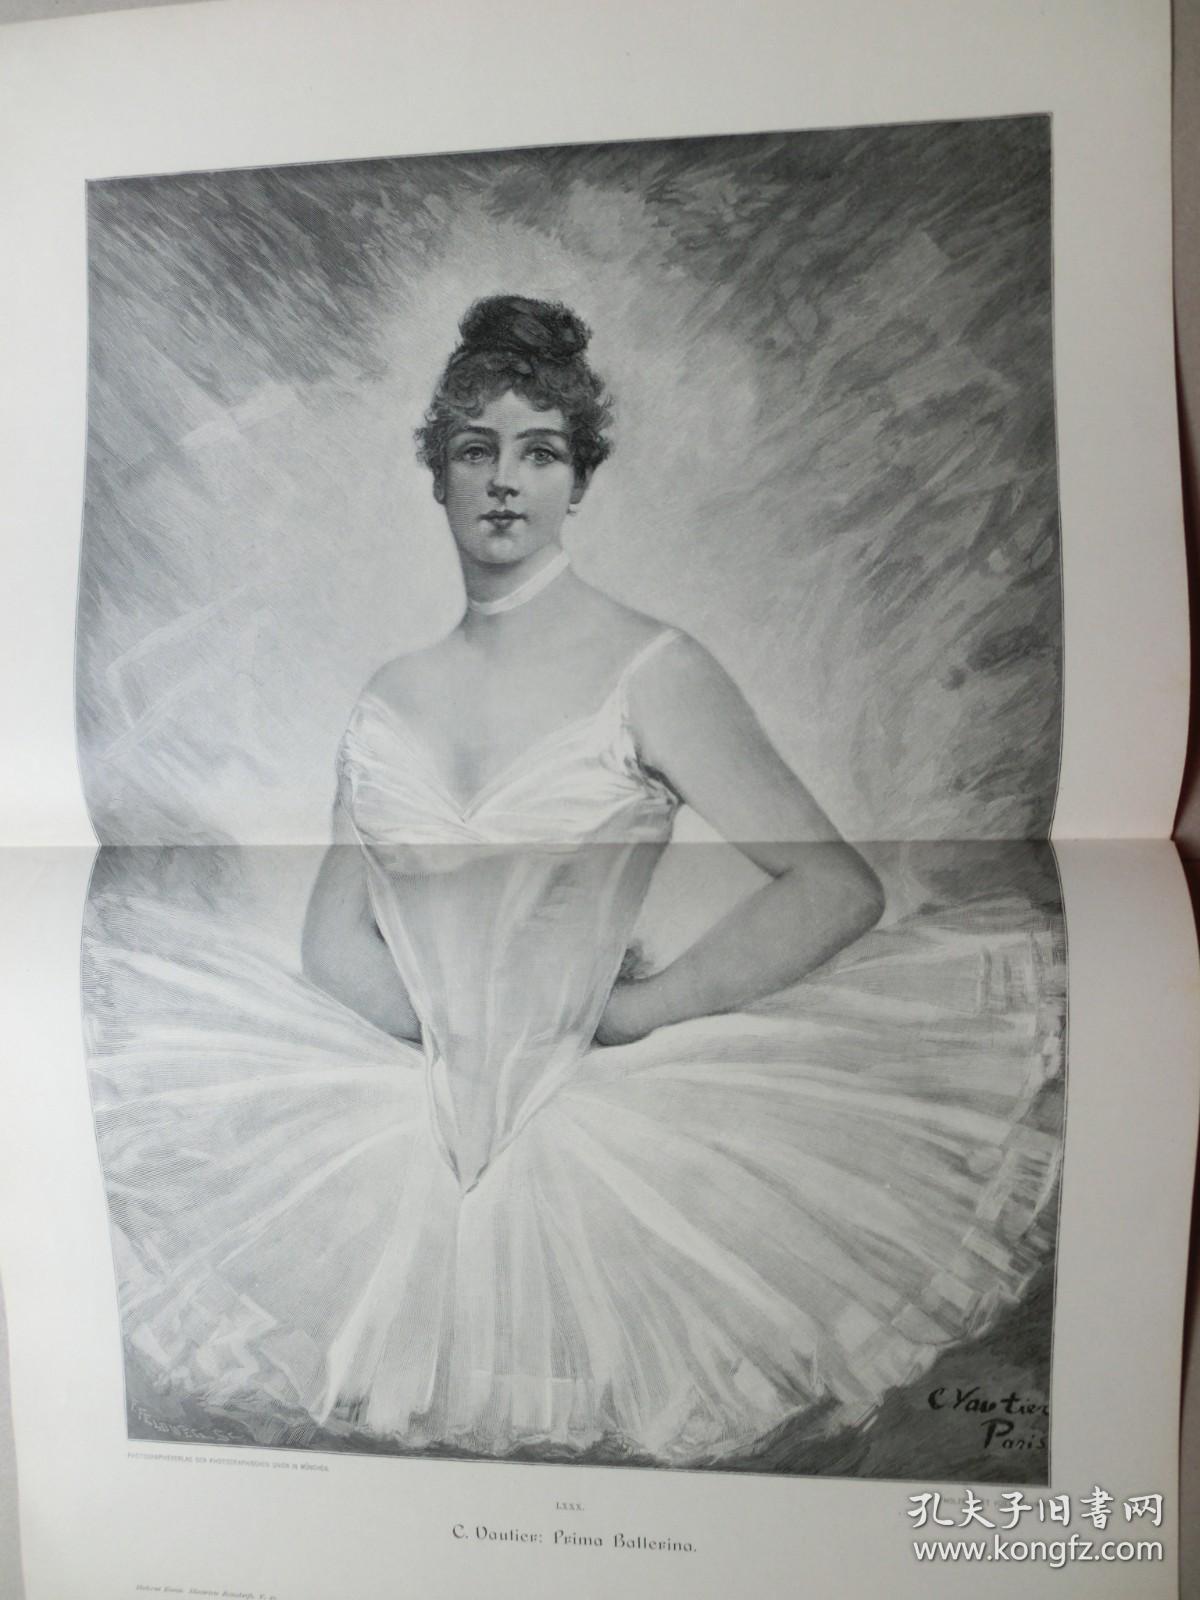 【百元包邮】巨幅《芭蕾舞女明星》（Prima Ballerina） 1891年木刻版画 纸张尺寸约56×41厘米